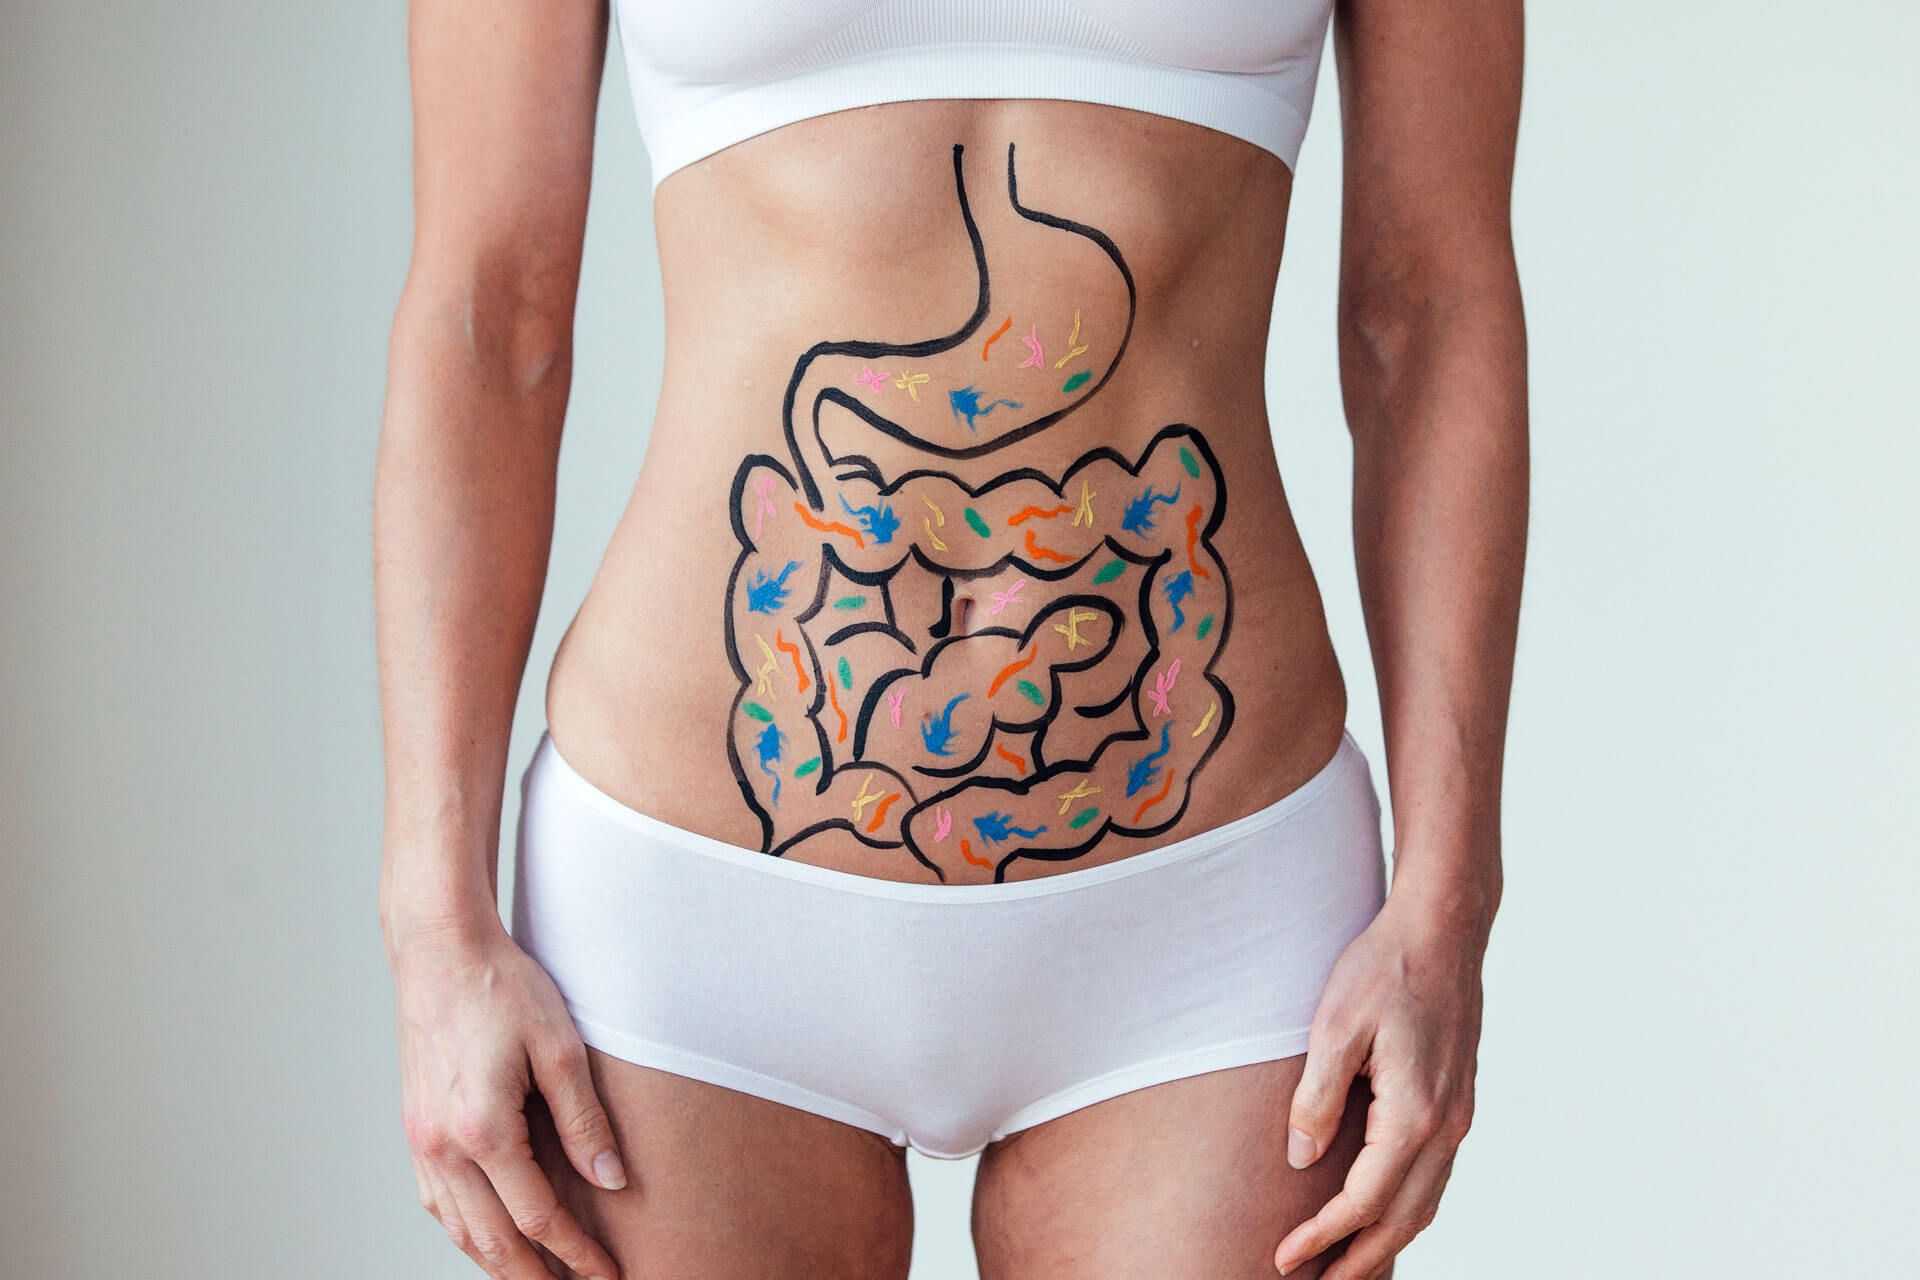 Bauch mit aufgezeichnetem Magen-Darm-Trakt.